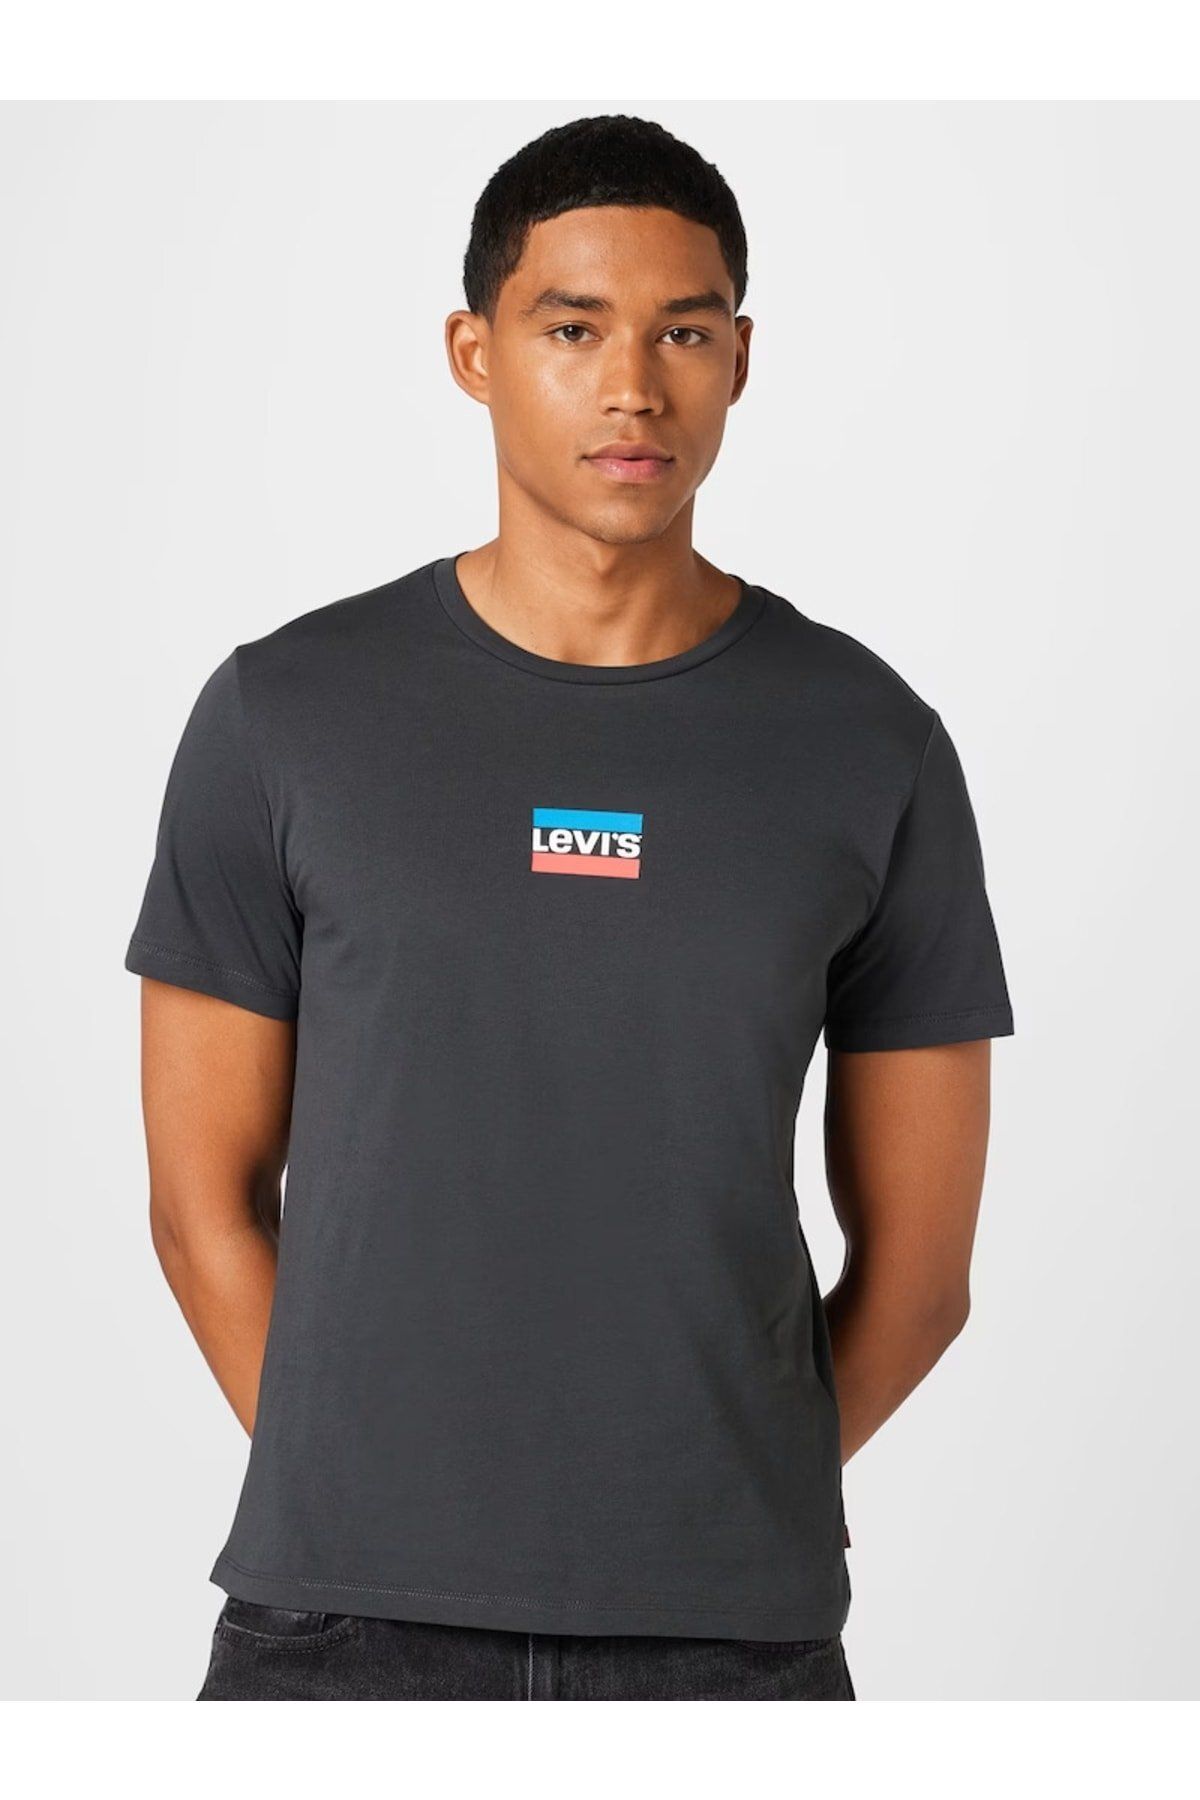 Levi's T-shirt Erkek T-shirt A2823